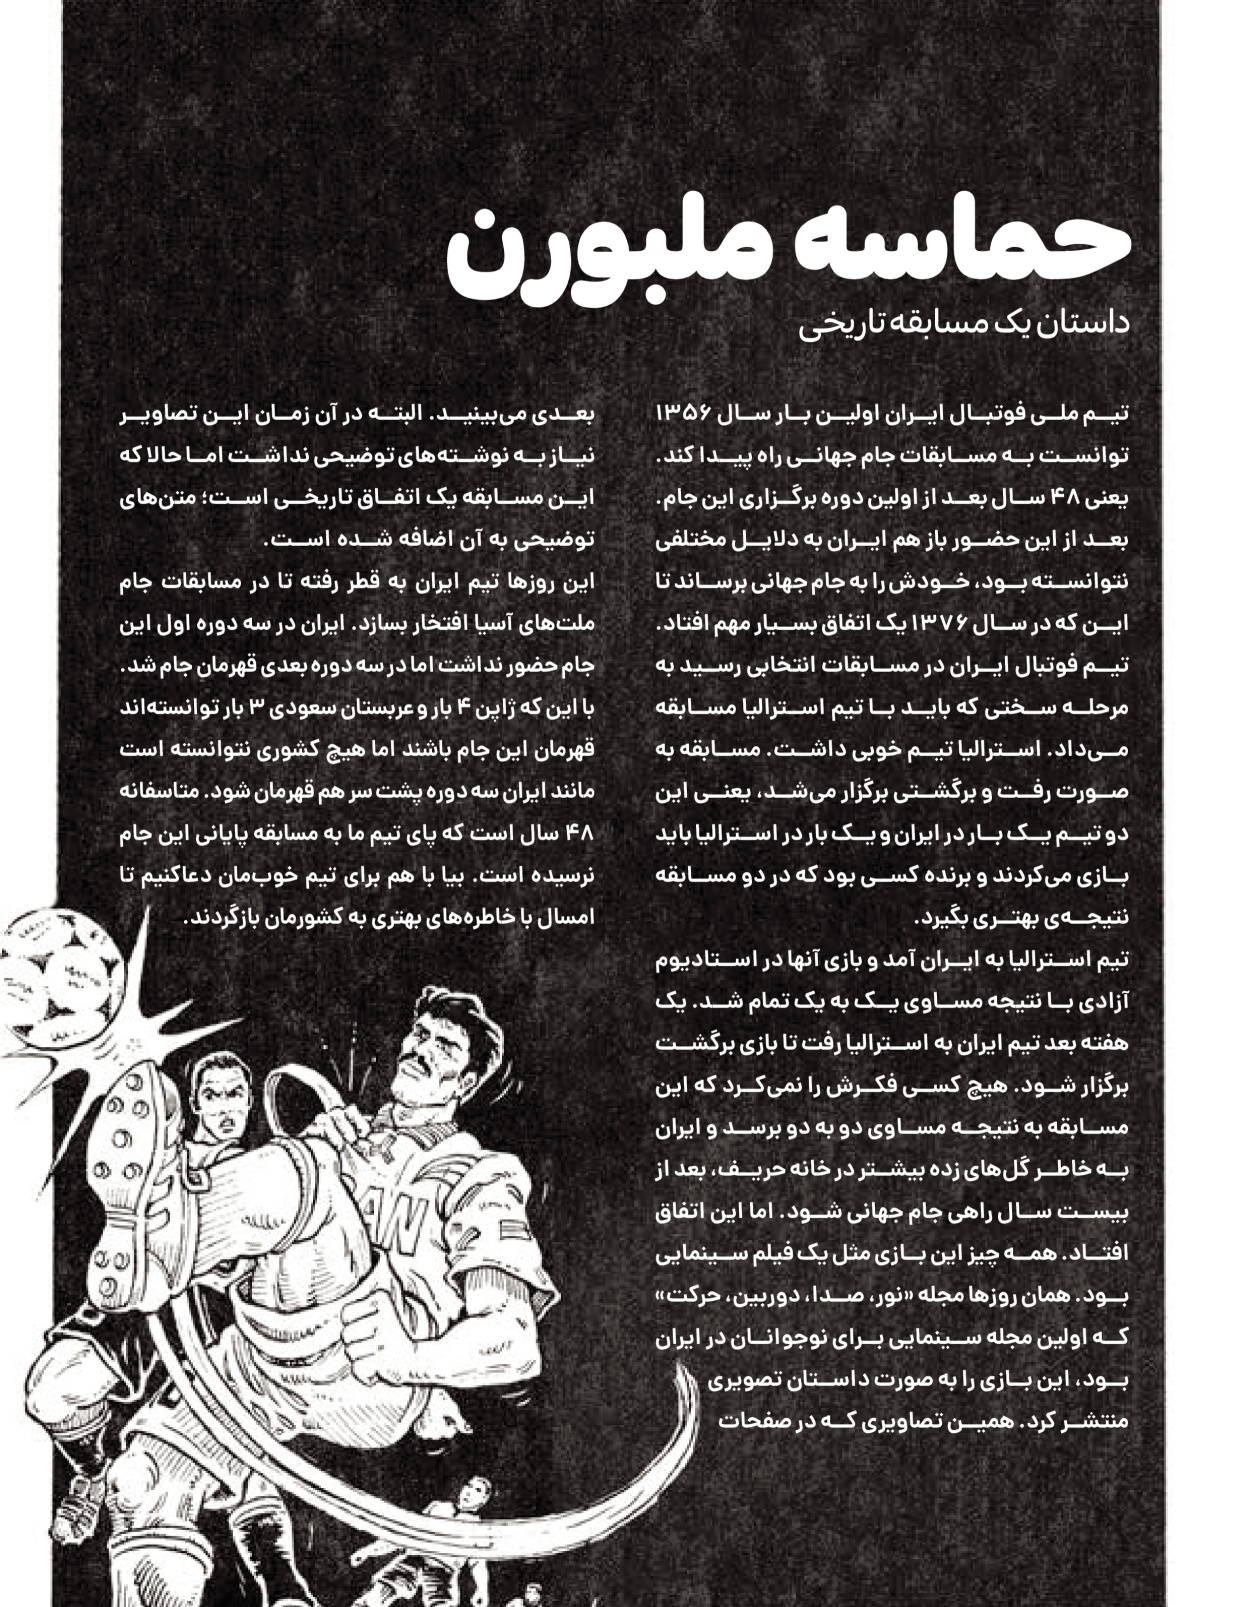 ماه نامه بچه های ایران - شماره نه - ۰۹ بهمن ۱۴۰۲ - صفحه ۷۹